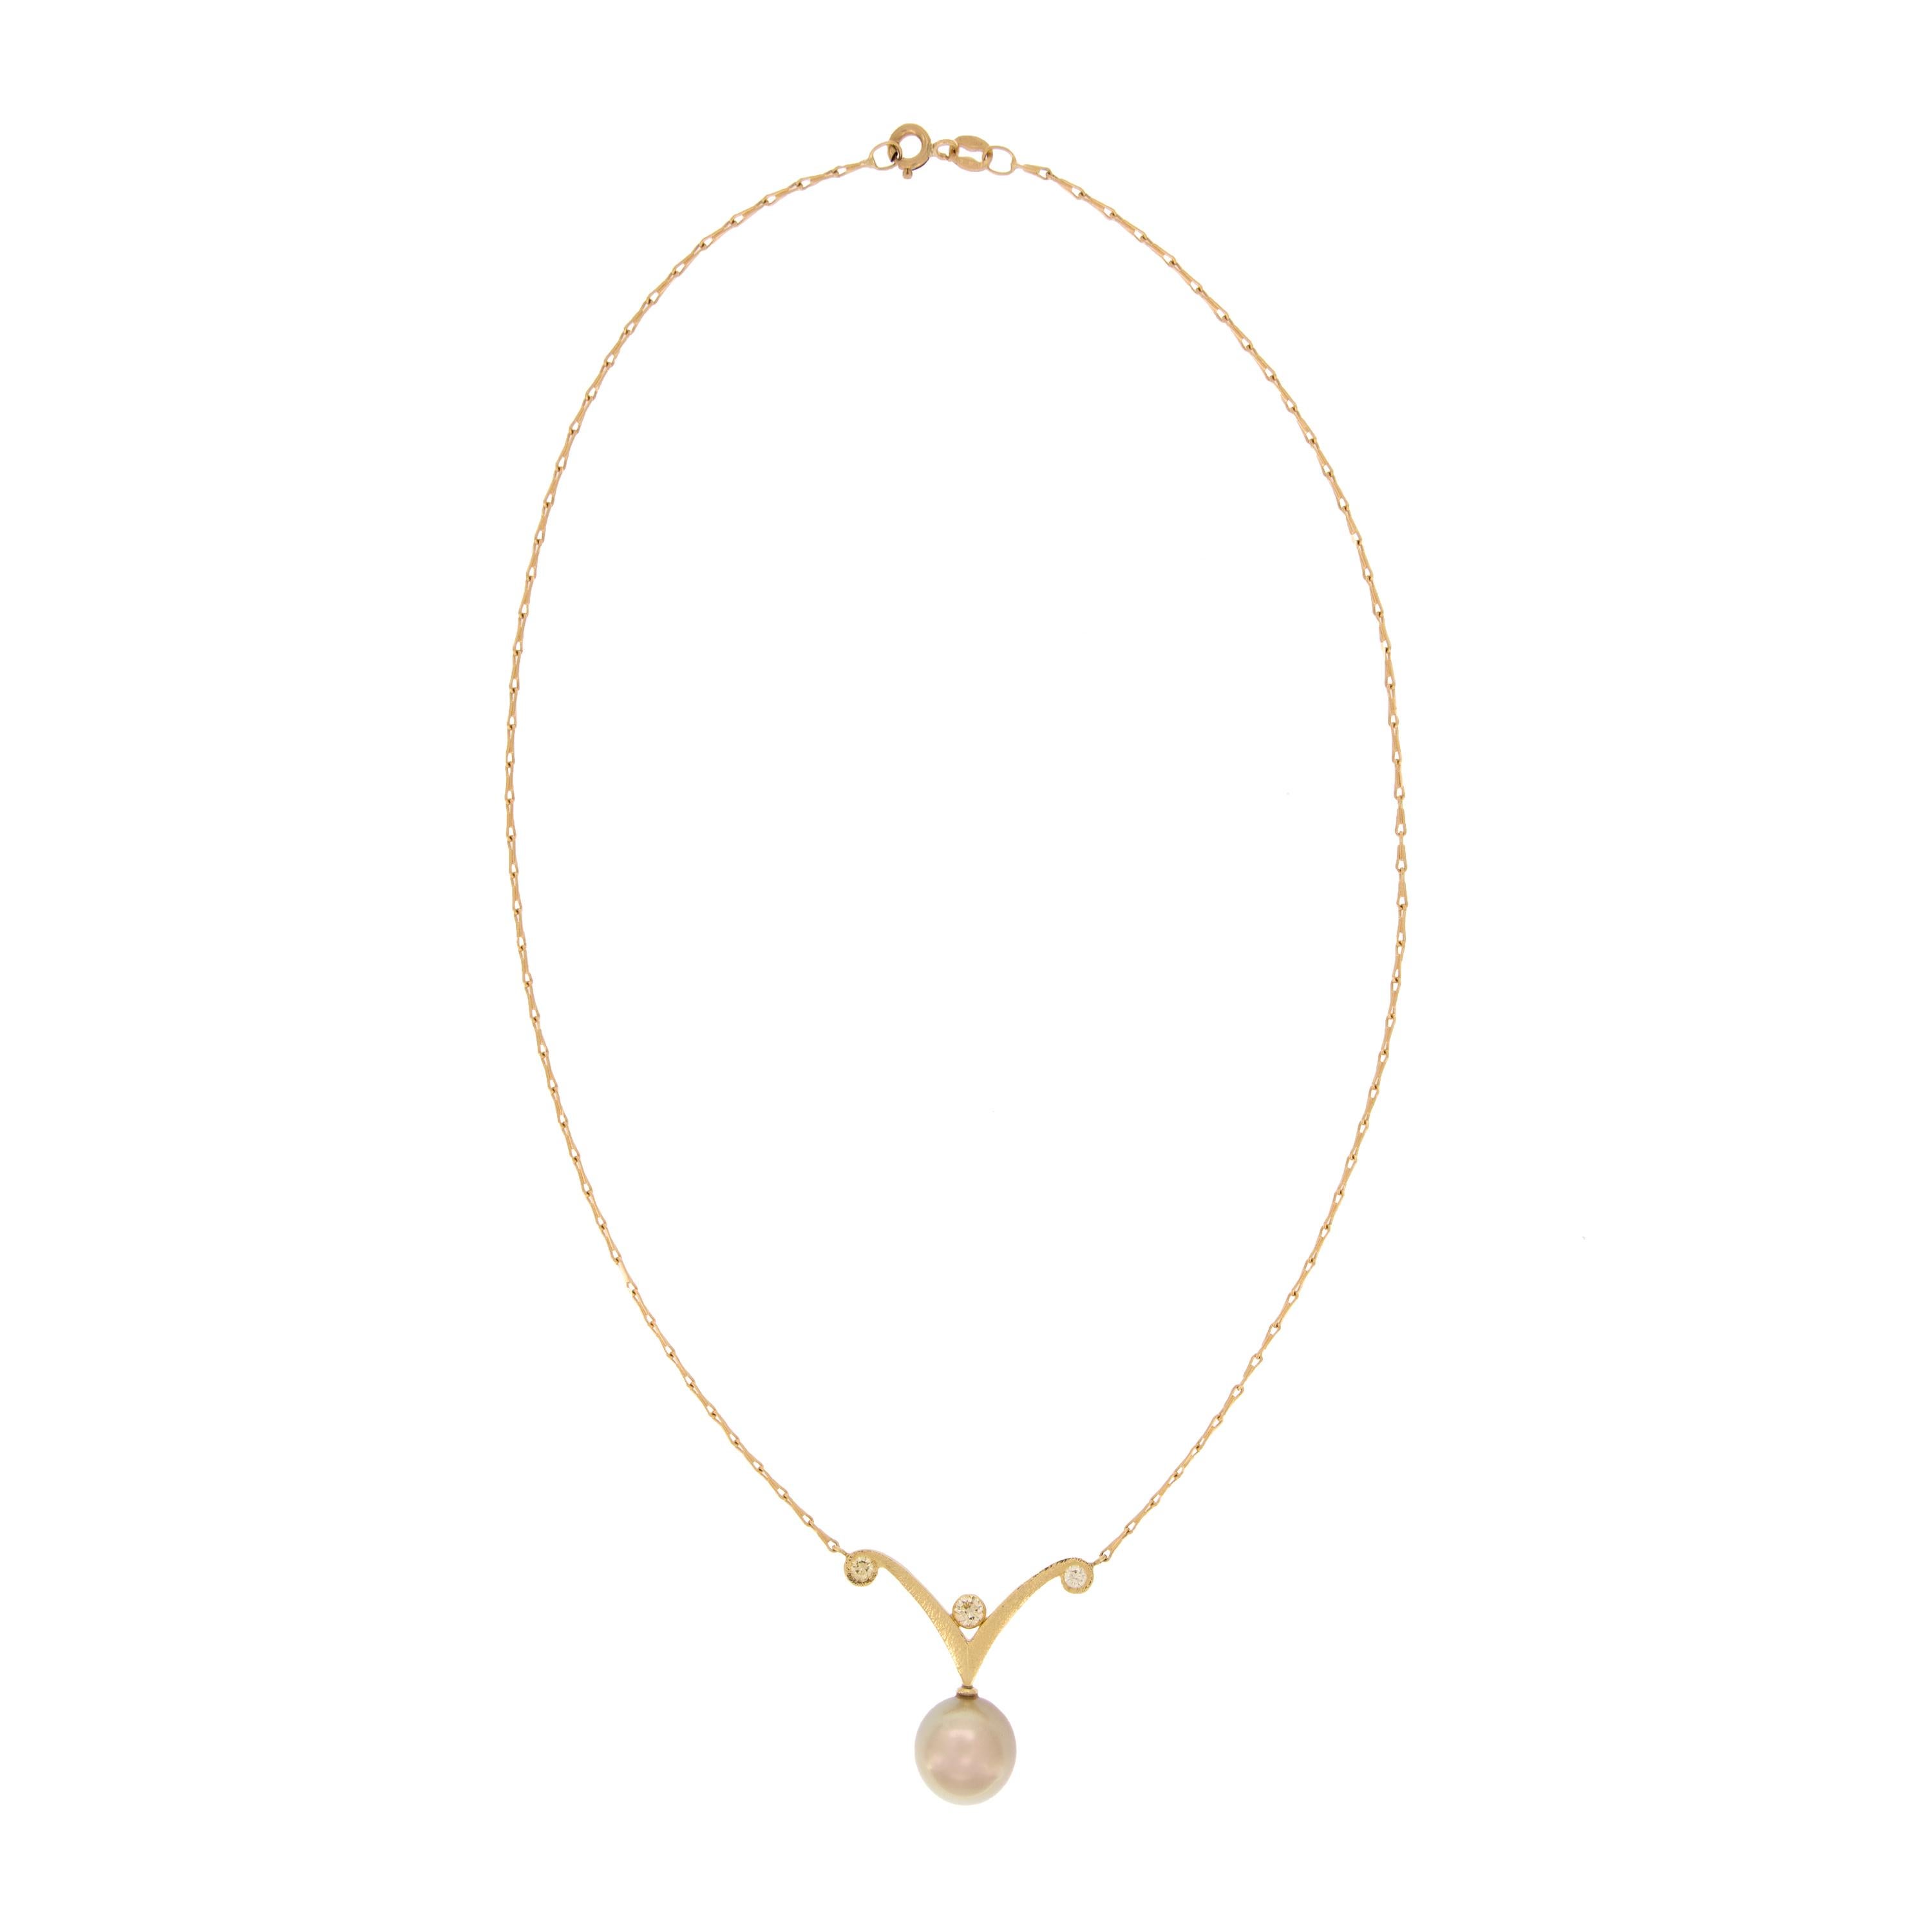 Le collier de perles et de diamants, de conception simple et en forme de rouleau, est composé d'une perle dorée de 11,3 mm aux reflets roses et est suspendu à une chaîne barleycorn de 16 pouces en or jaune 18k. Le pendentif mesure 1,25